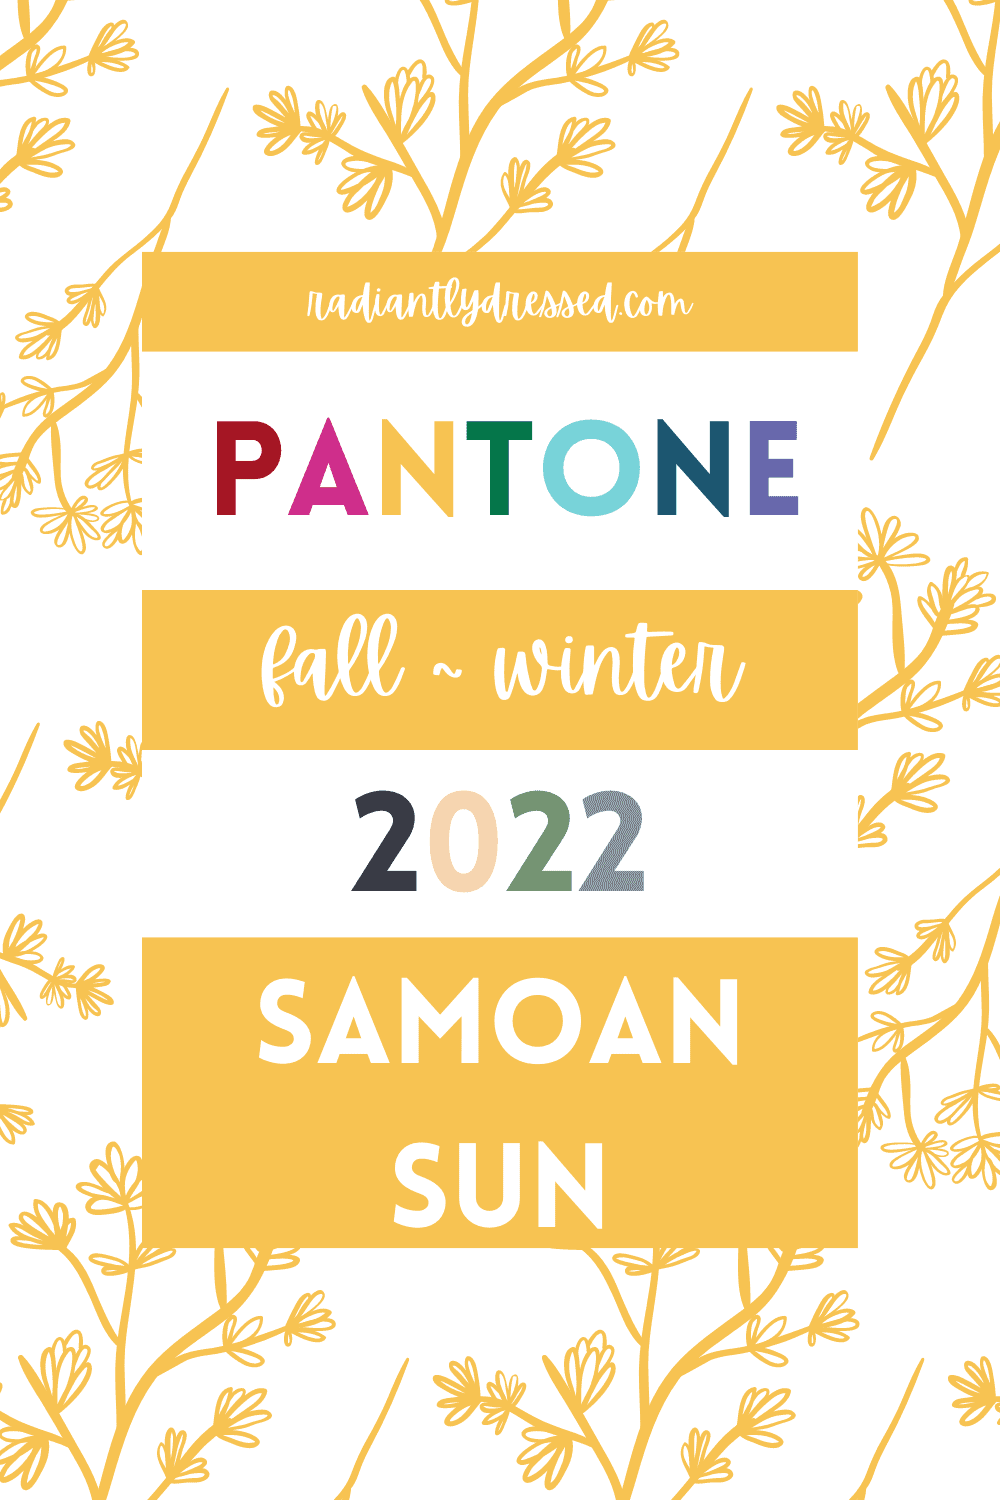 Pantone Samoan Sun Pin